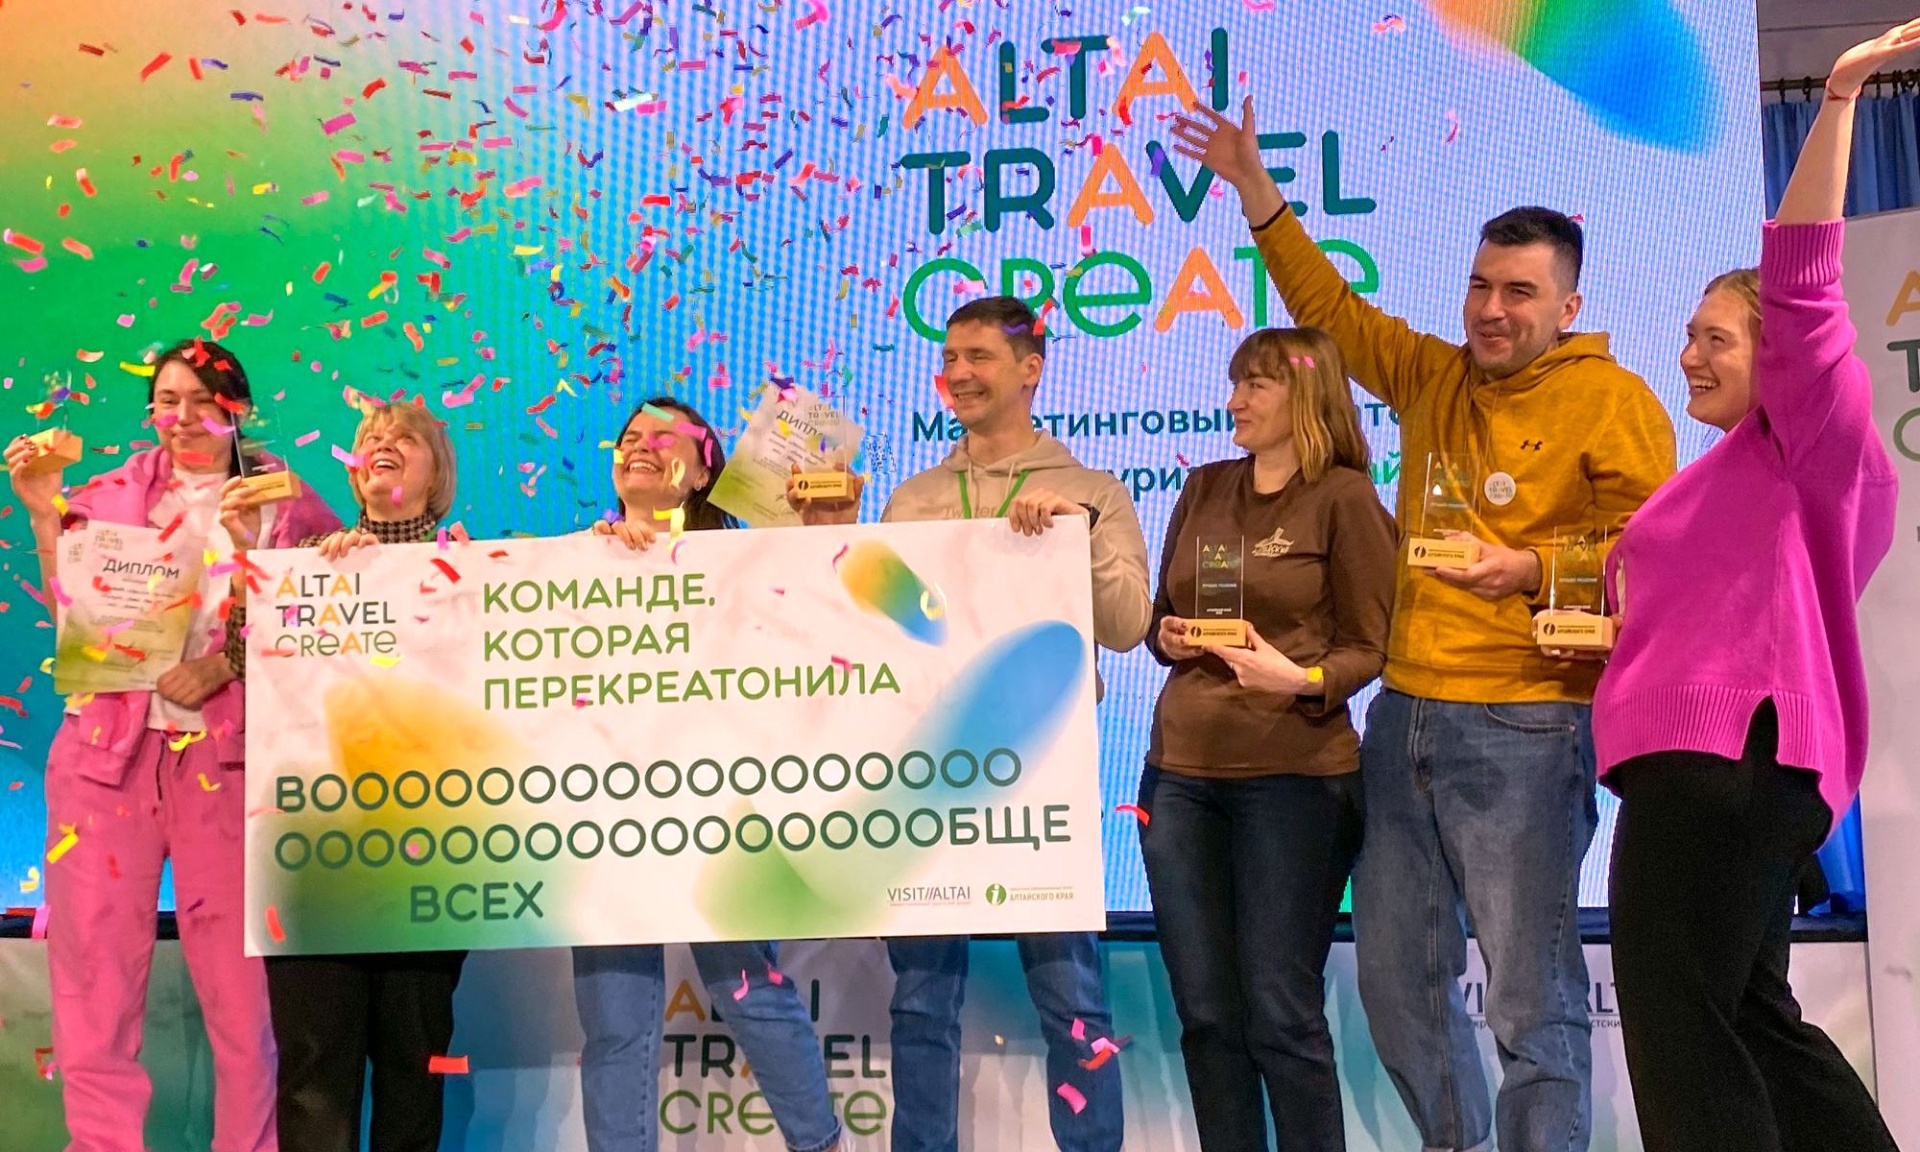 команда-победительница креатона Altai Travel Create_Анна Доронина.jpg